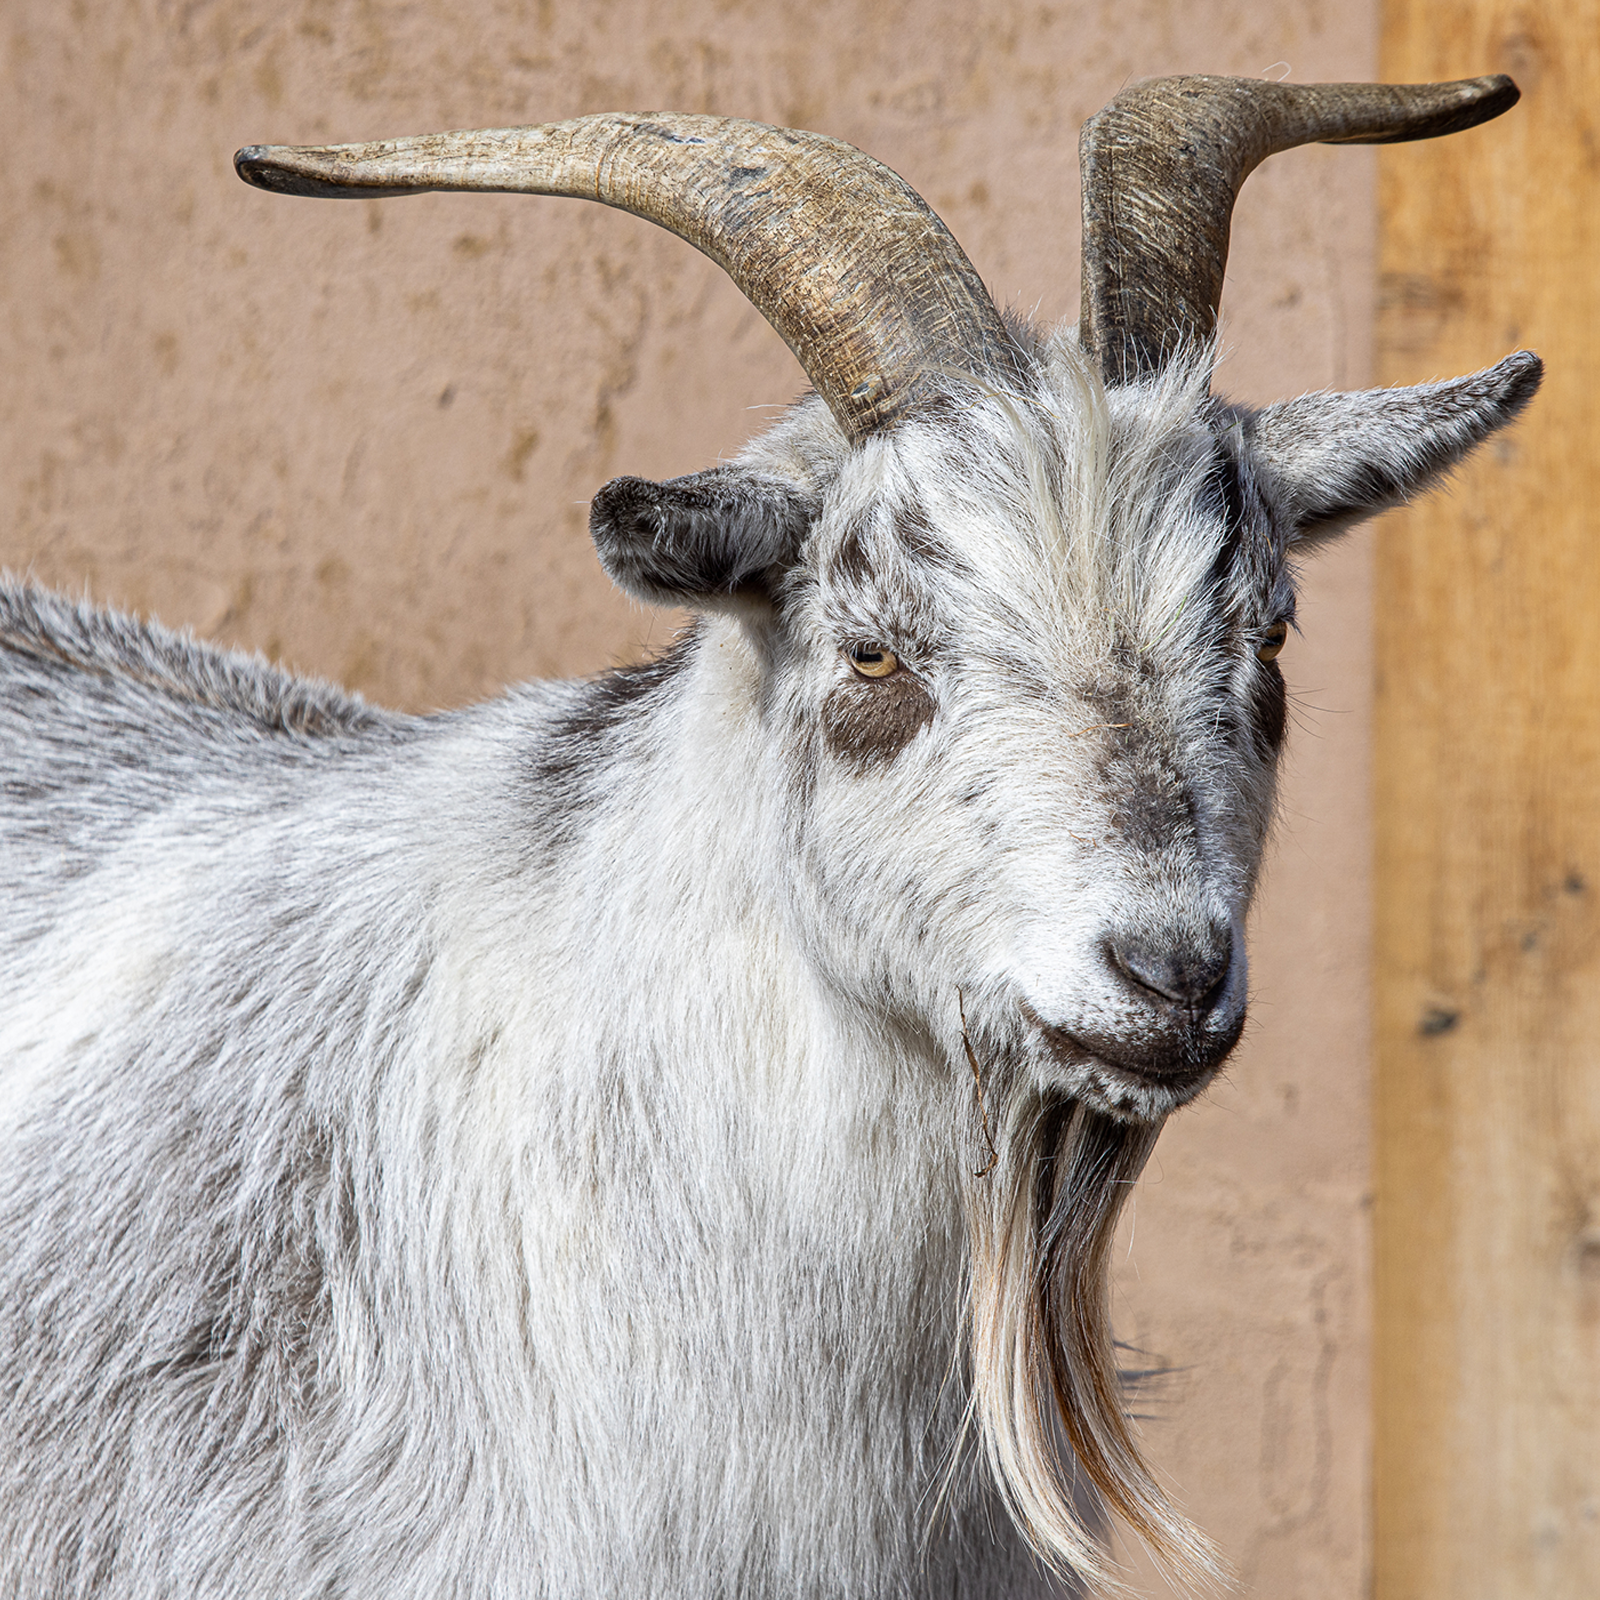 Goat - Description, Habitat, Image, Diet, and Interesting Facts